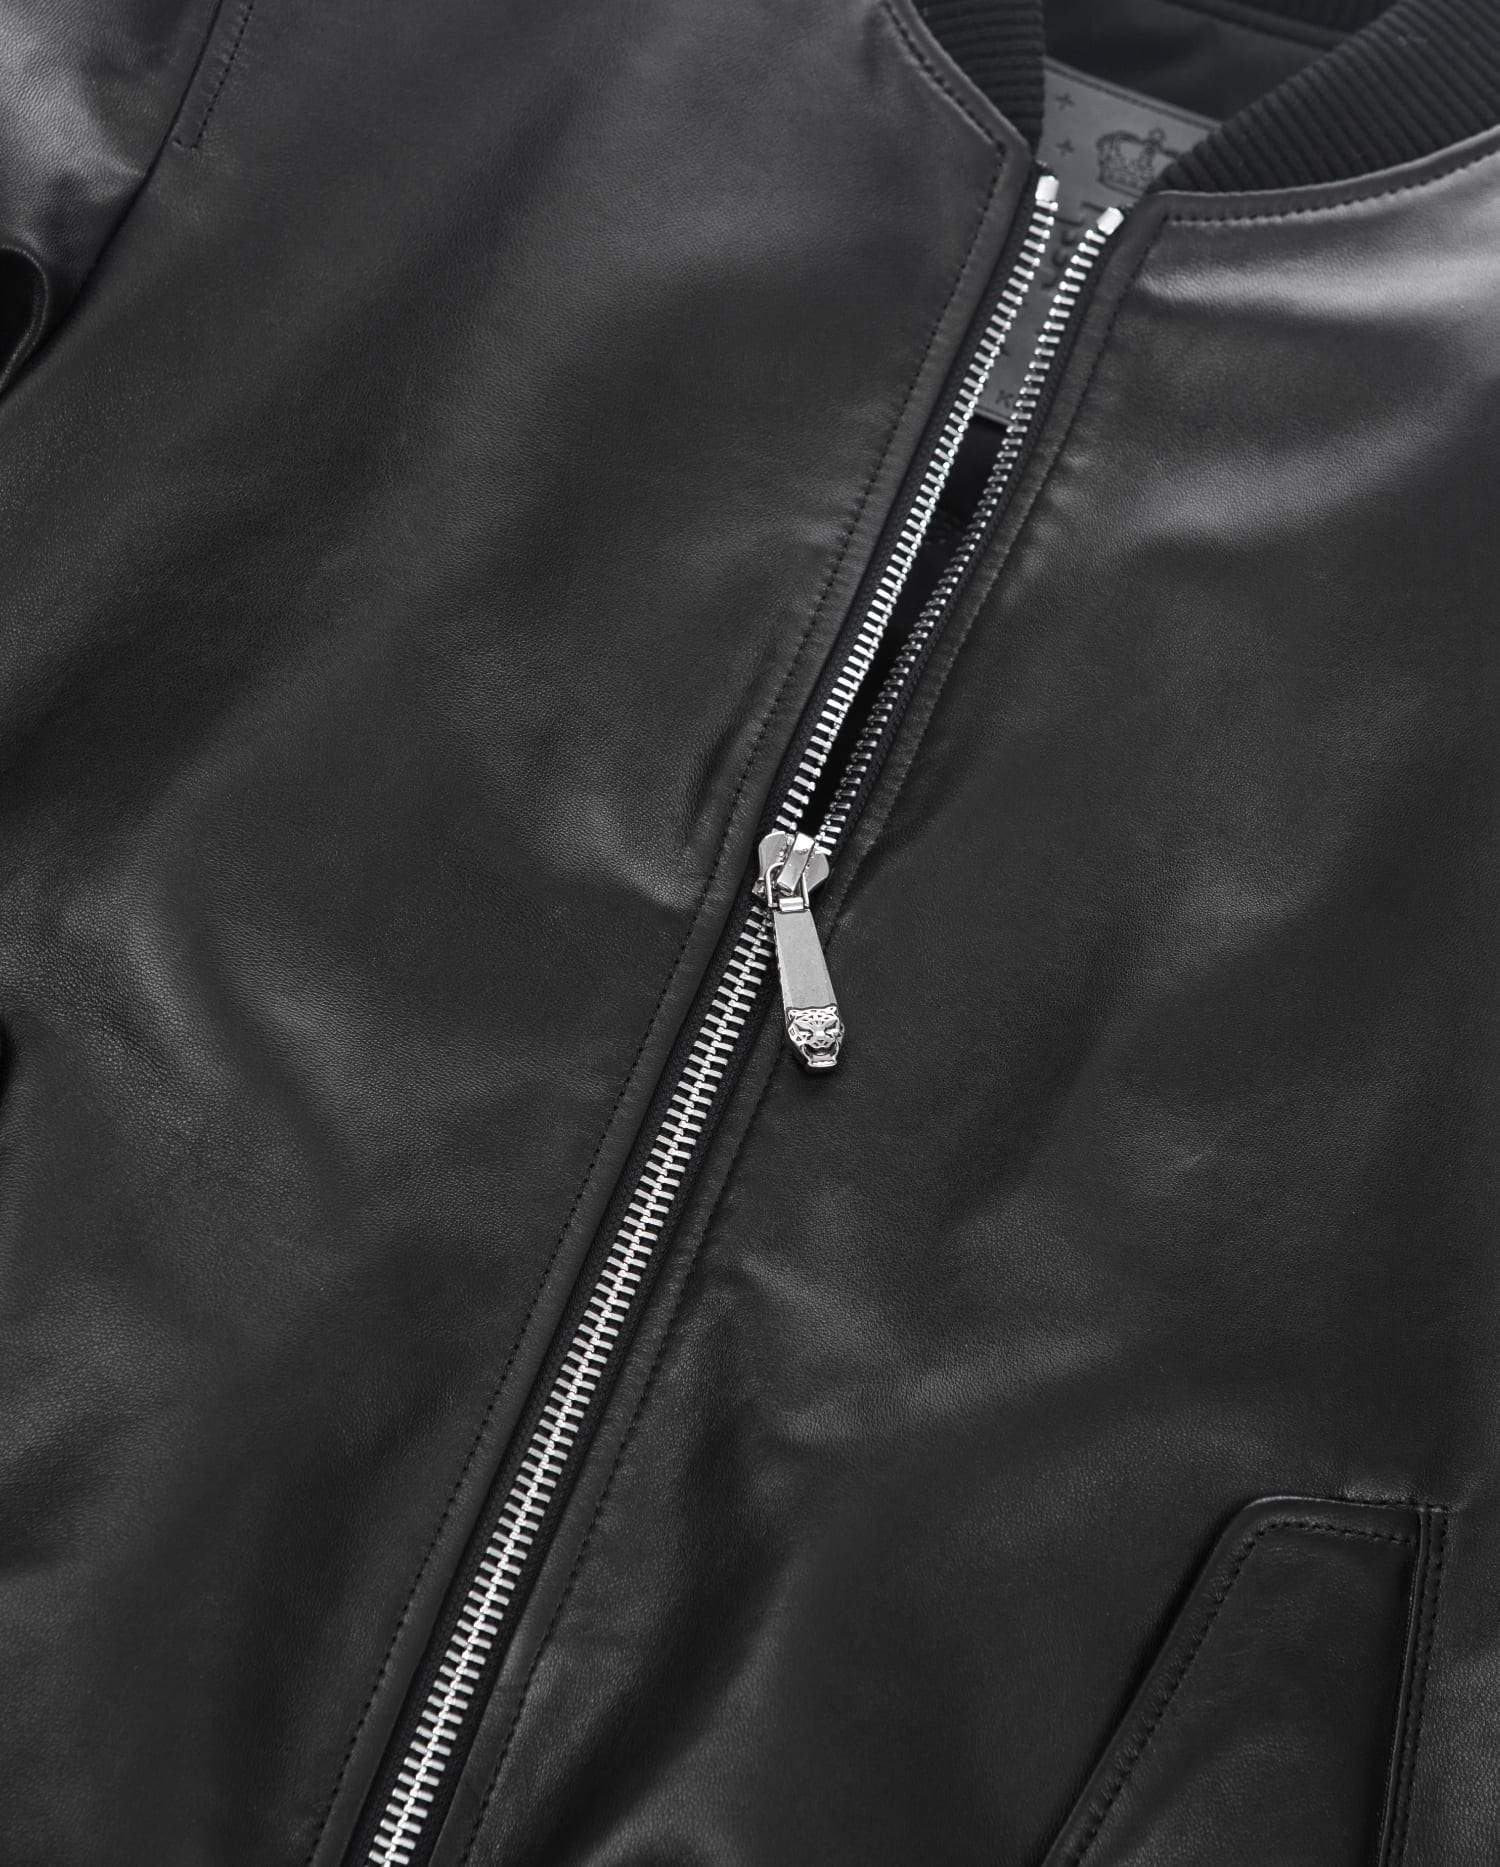 Black 3D Print Patch Goatskin Bomber Leather Jacket